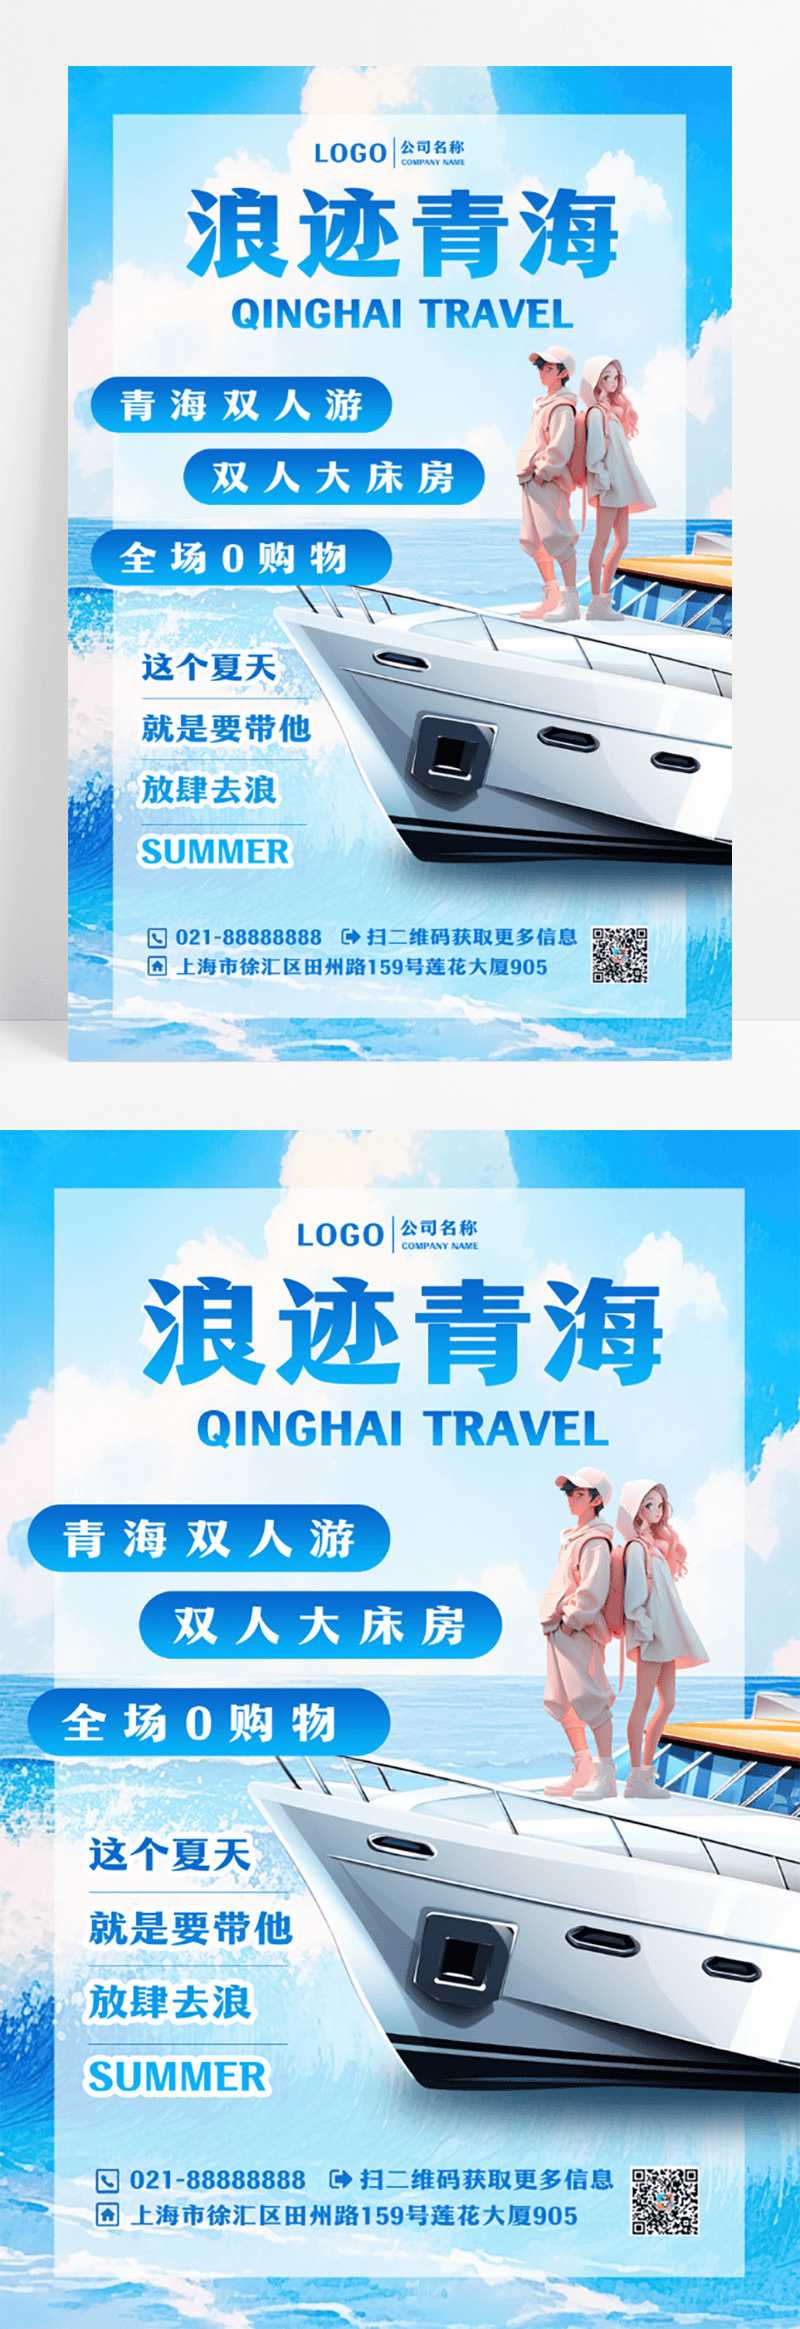 青海旅游宣传海报设计